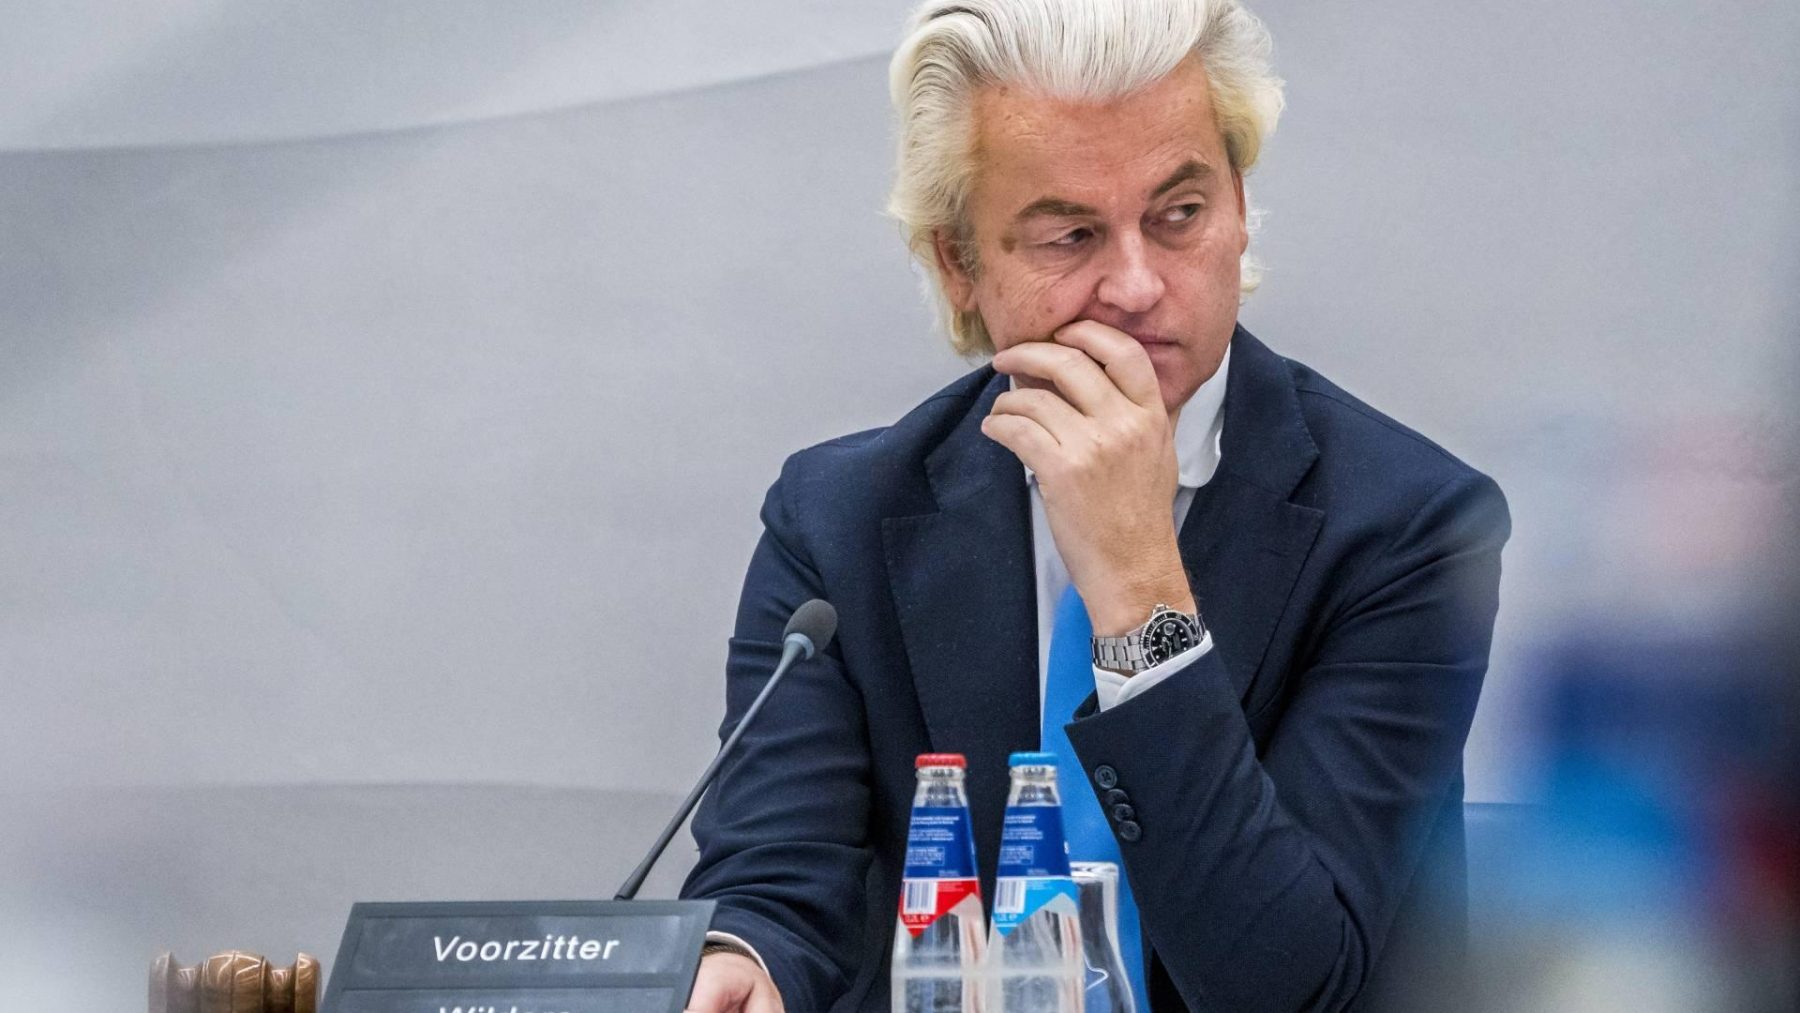 Dilan Yesilgöz en Geert Wilders hadden een 'goed gesprek' na tweet over afkomst